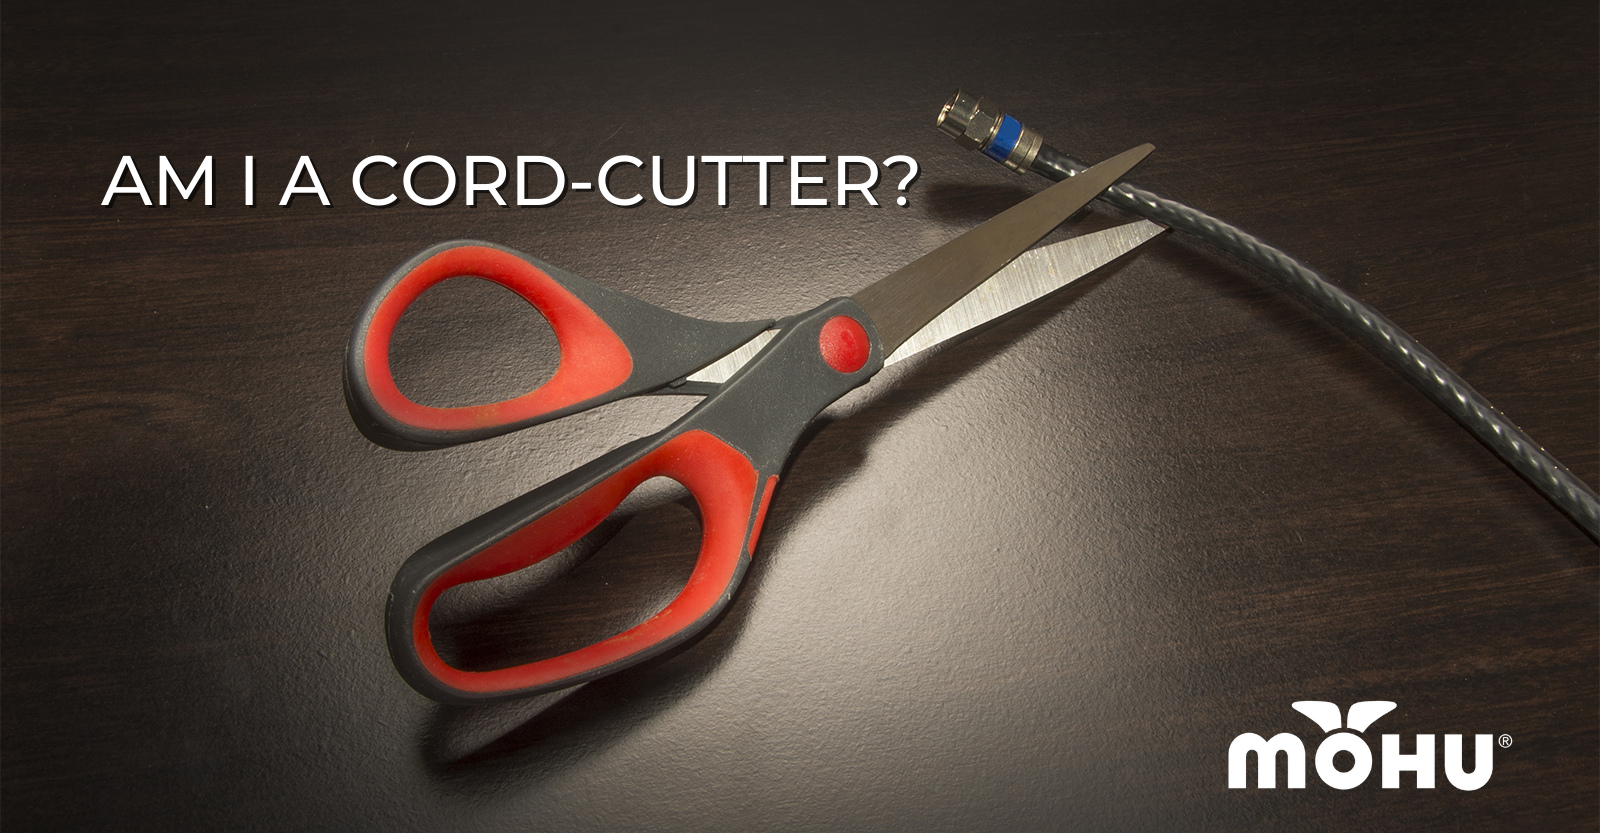 Scissors cutting a coax cable, Am I a Cord-Cutter, Mohu